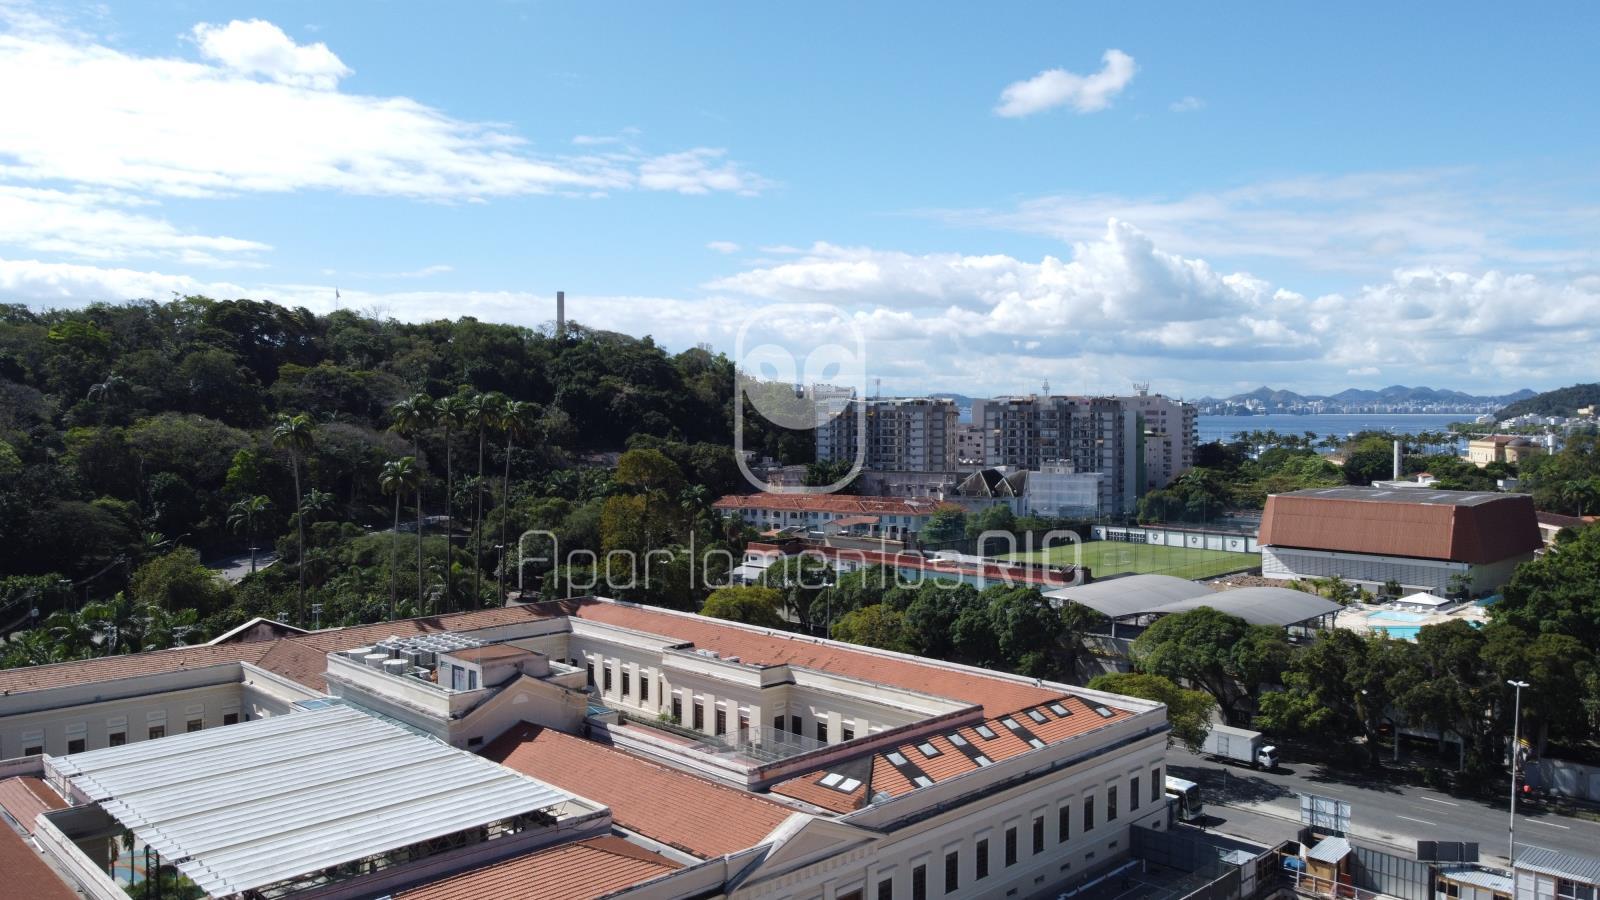 Highlight Jardim Botafogo - Última Fase